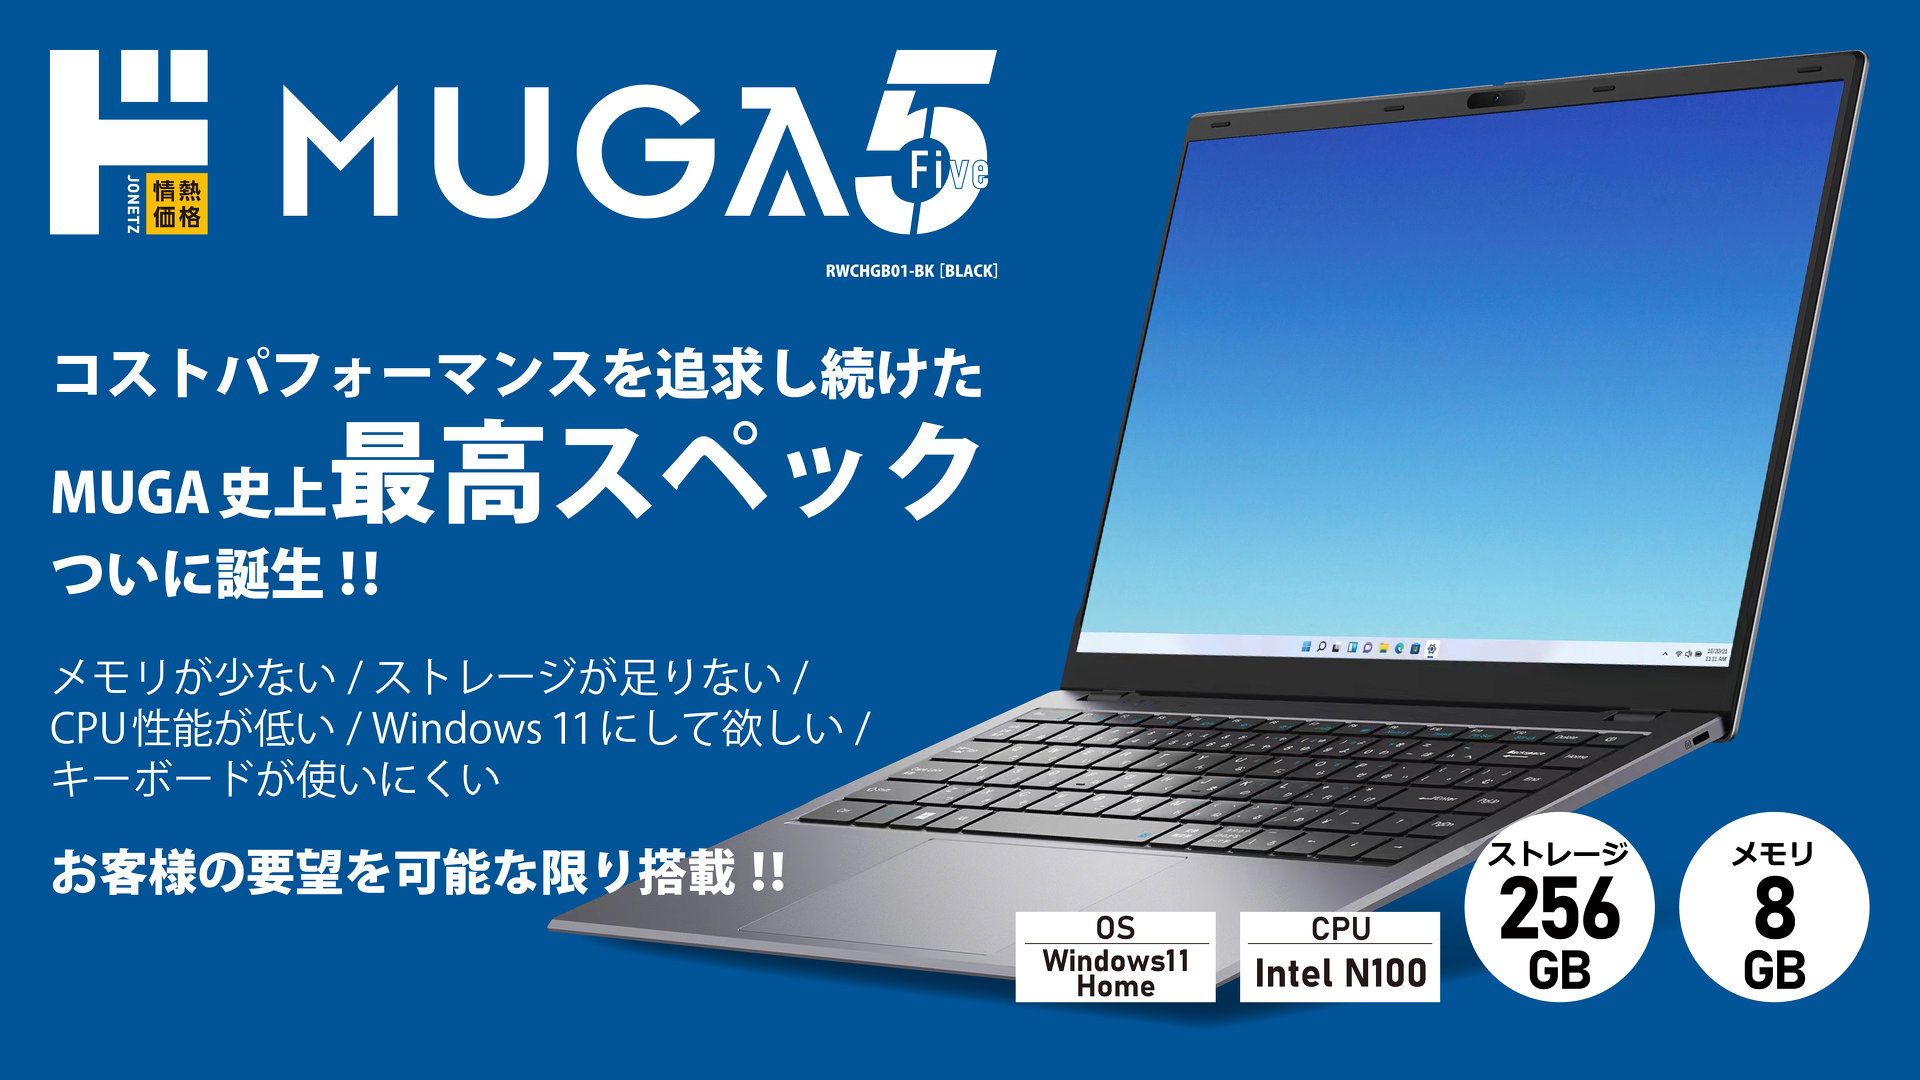 ドンキの新作PC「MUGA5」、価格は4万3780円 CPUにIntel N100 「動作が 